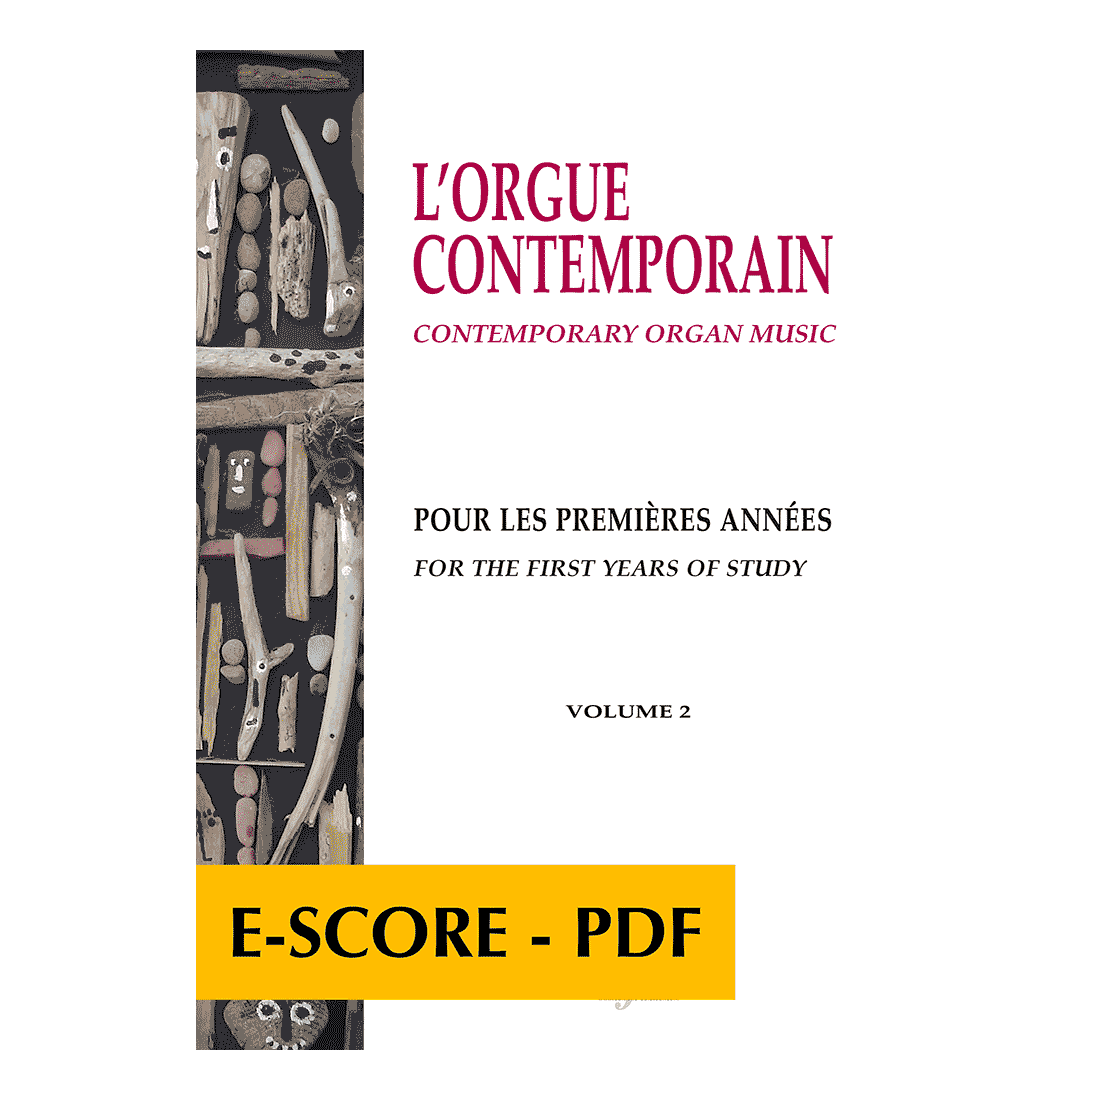 L'orgue contemporain pour les premières années - Volume 2 - E-score PDF